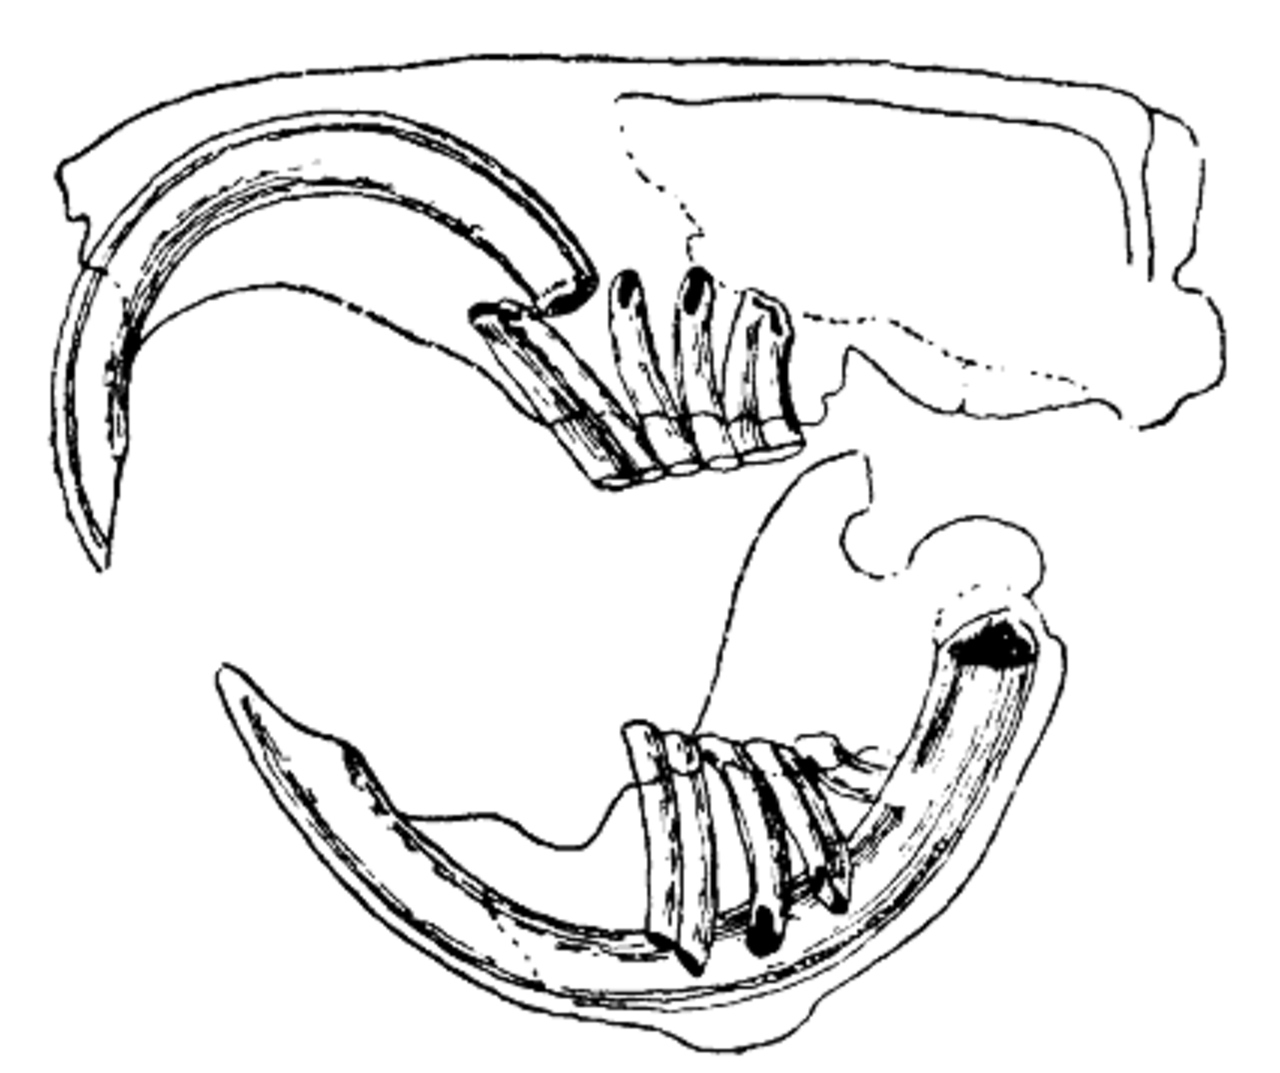 Строение зубов грызунов и зайцеобразных. Строение челюсти зайцеобразных. Скелет челюсти зайцеобразных. Зайцеобразные зубная система. Дифференциация зубов млекопитающих